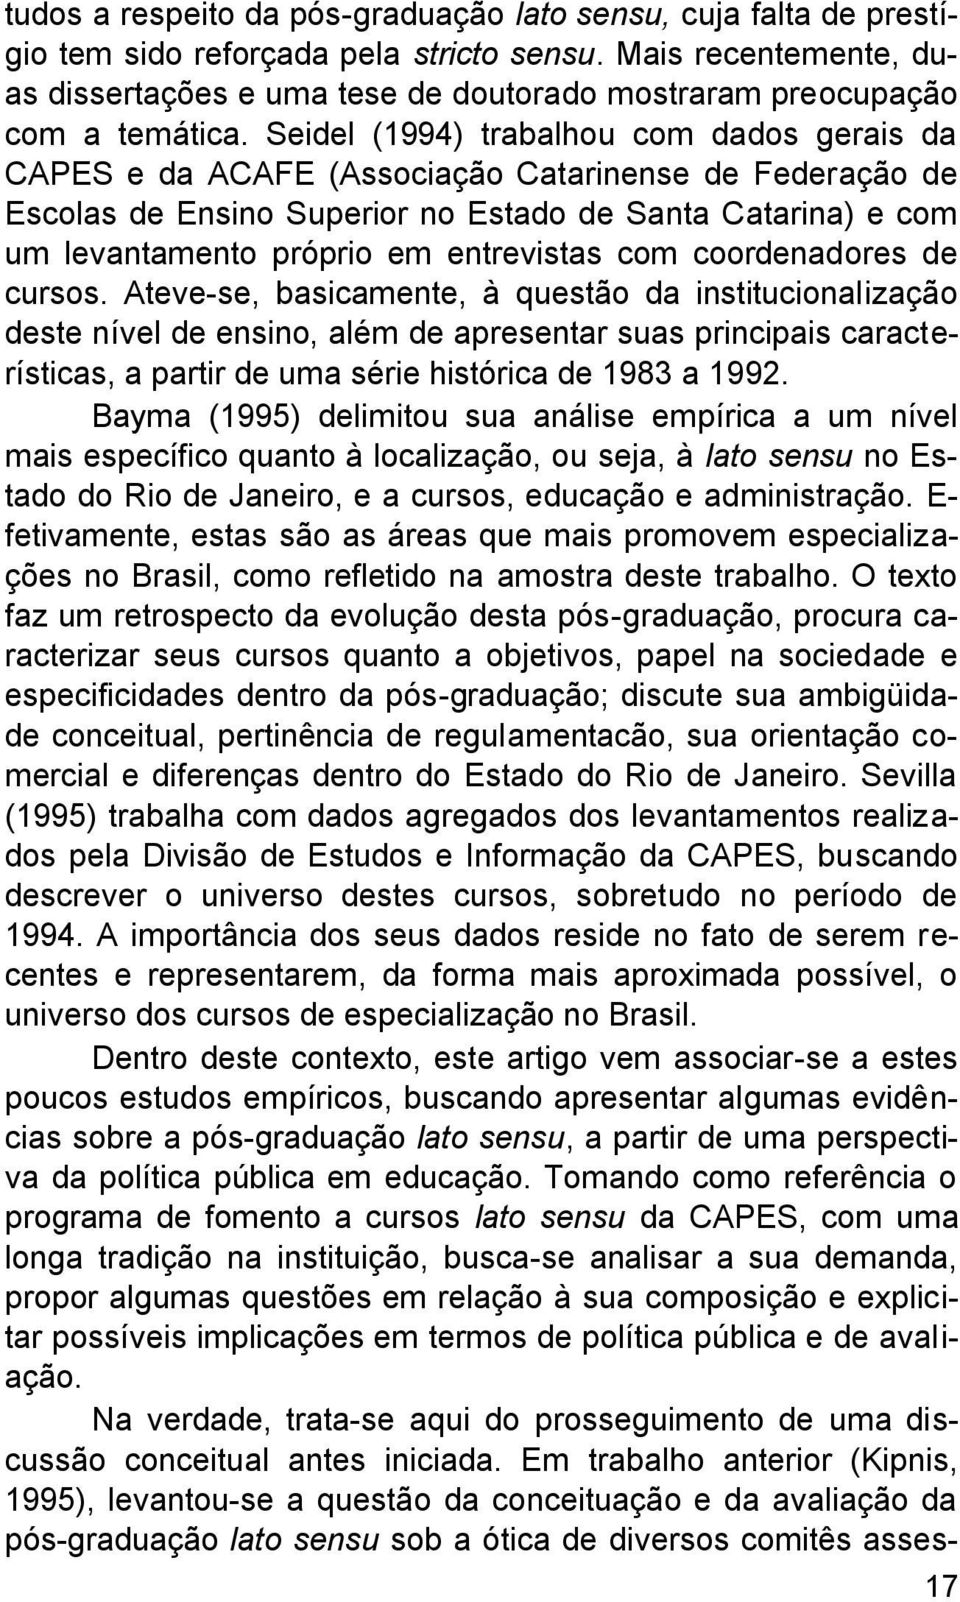 Seidel (1994) trabalhou com dados gerais da CAPES e da ACAFE (Associação Catarinense de Federação de Escolas de Ensino Superior no Estado de Santa Catarina) e com um levantamento próprio em